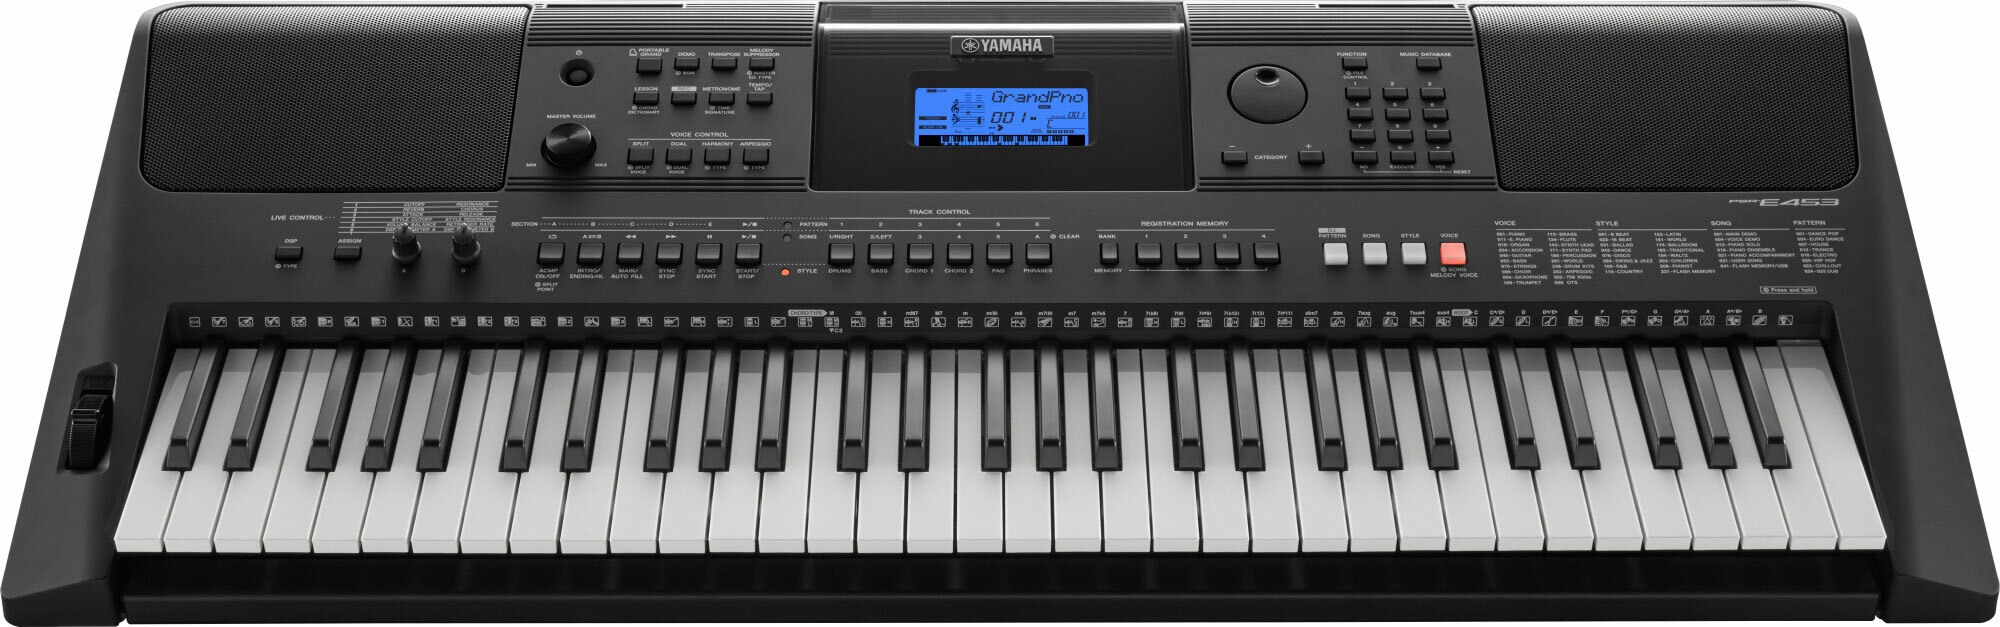 Yamaha Psr-e453 - Clavier Arrangeur - Main picture